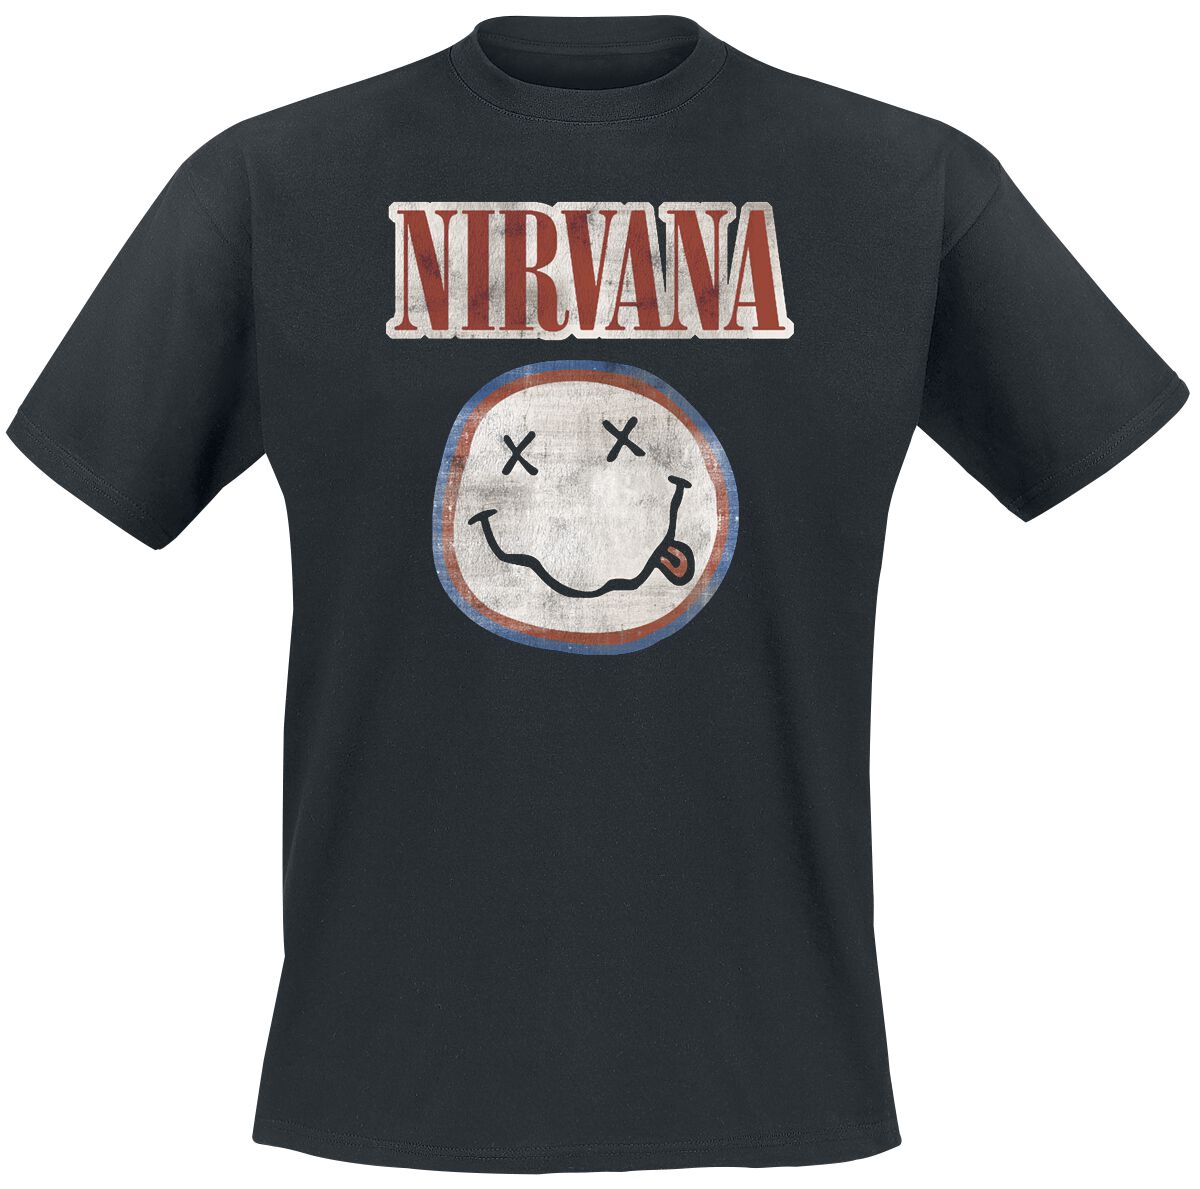 Nirvana T-Shirt - Distressed Logo - S bis XXL - für Männer - Größe XL - schwarz  - Lizenziertes Merchandise!